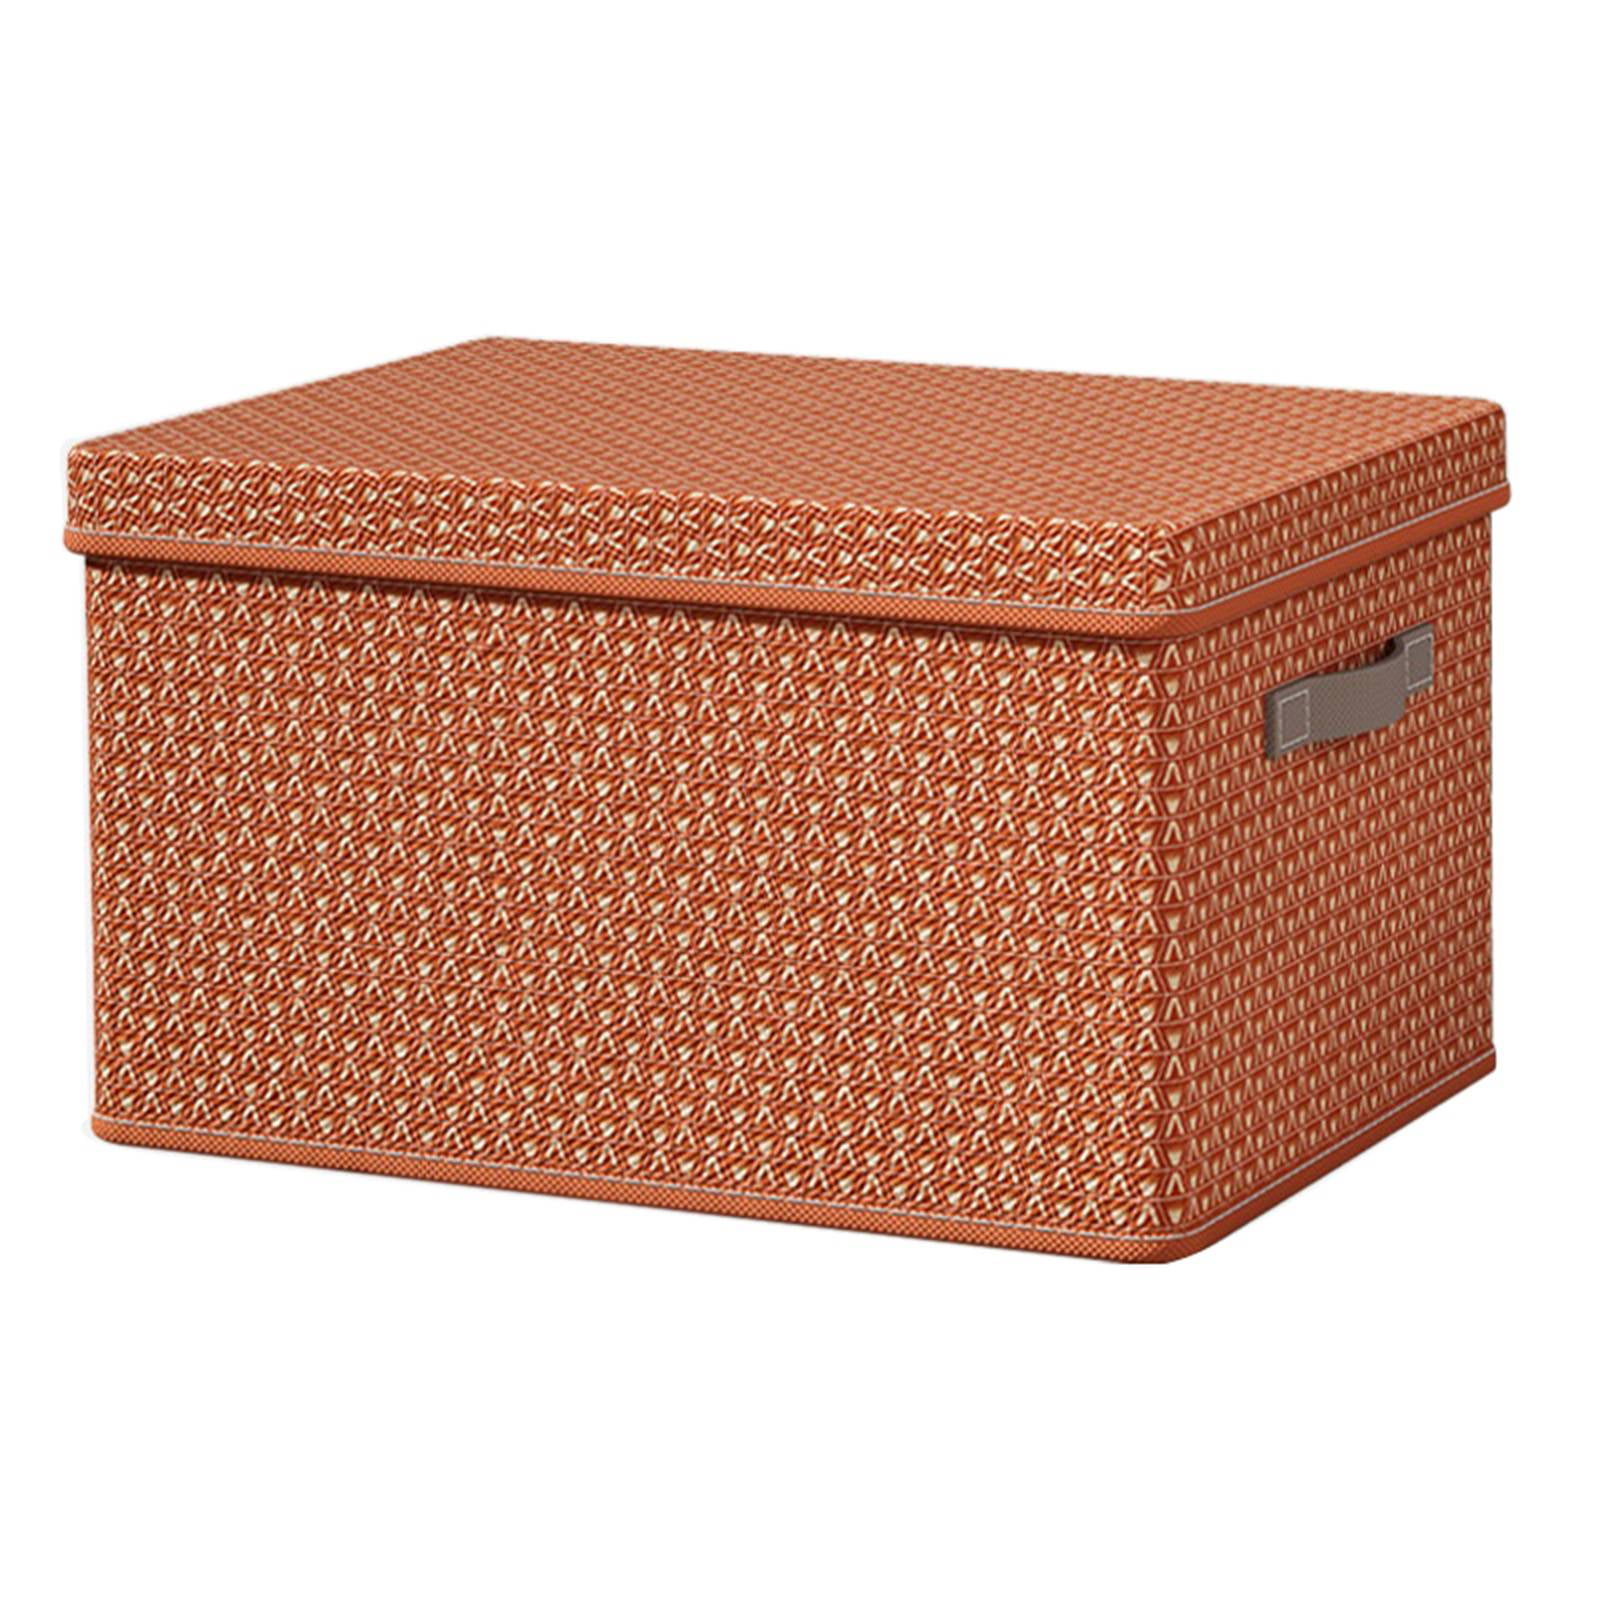 KITCSTI Storage Baskets for Organizing Fabric Storage Bins 17x12